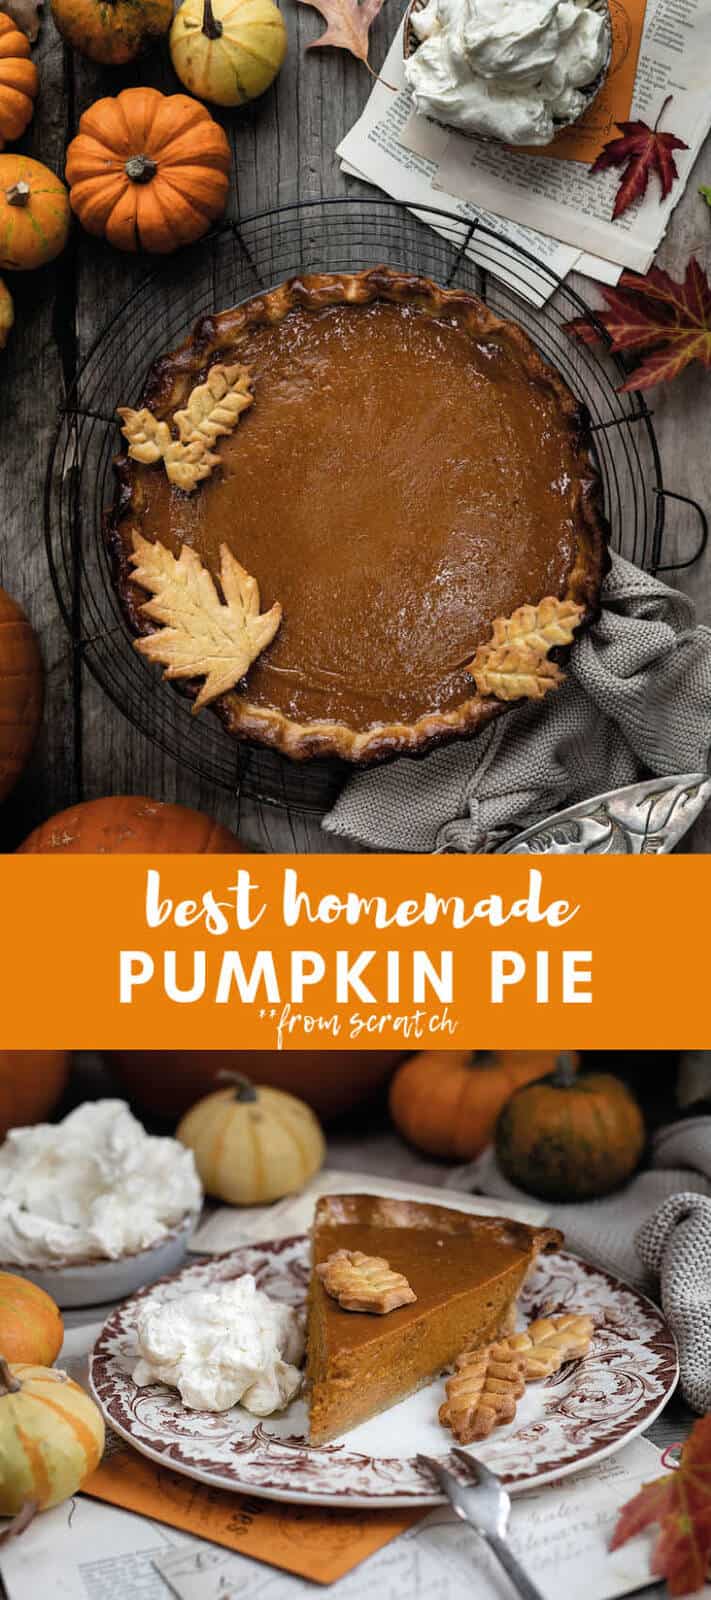 Best homemade pumpkin pie